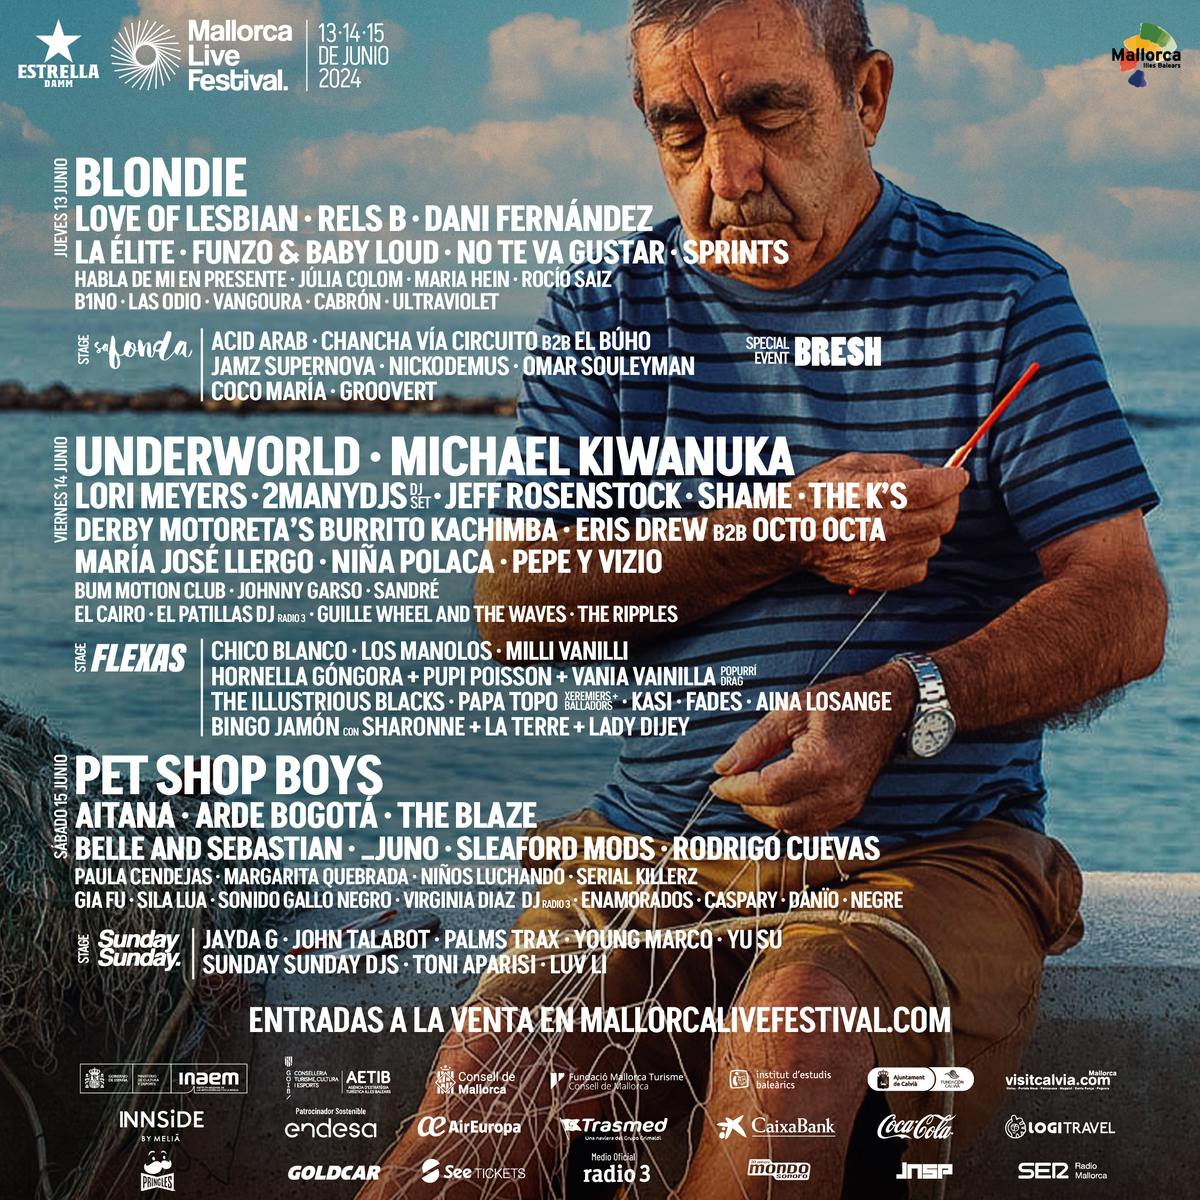 Entrada de 2 días (jueves+sábado) Mallorca Live Festival 2024